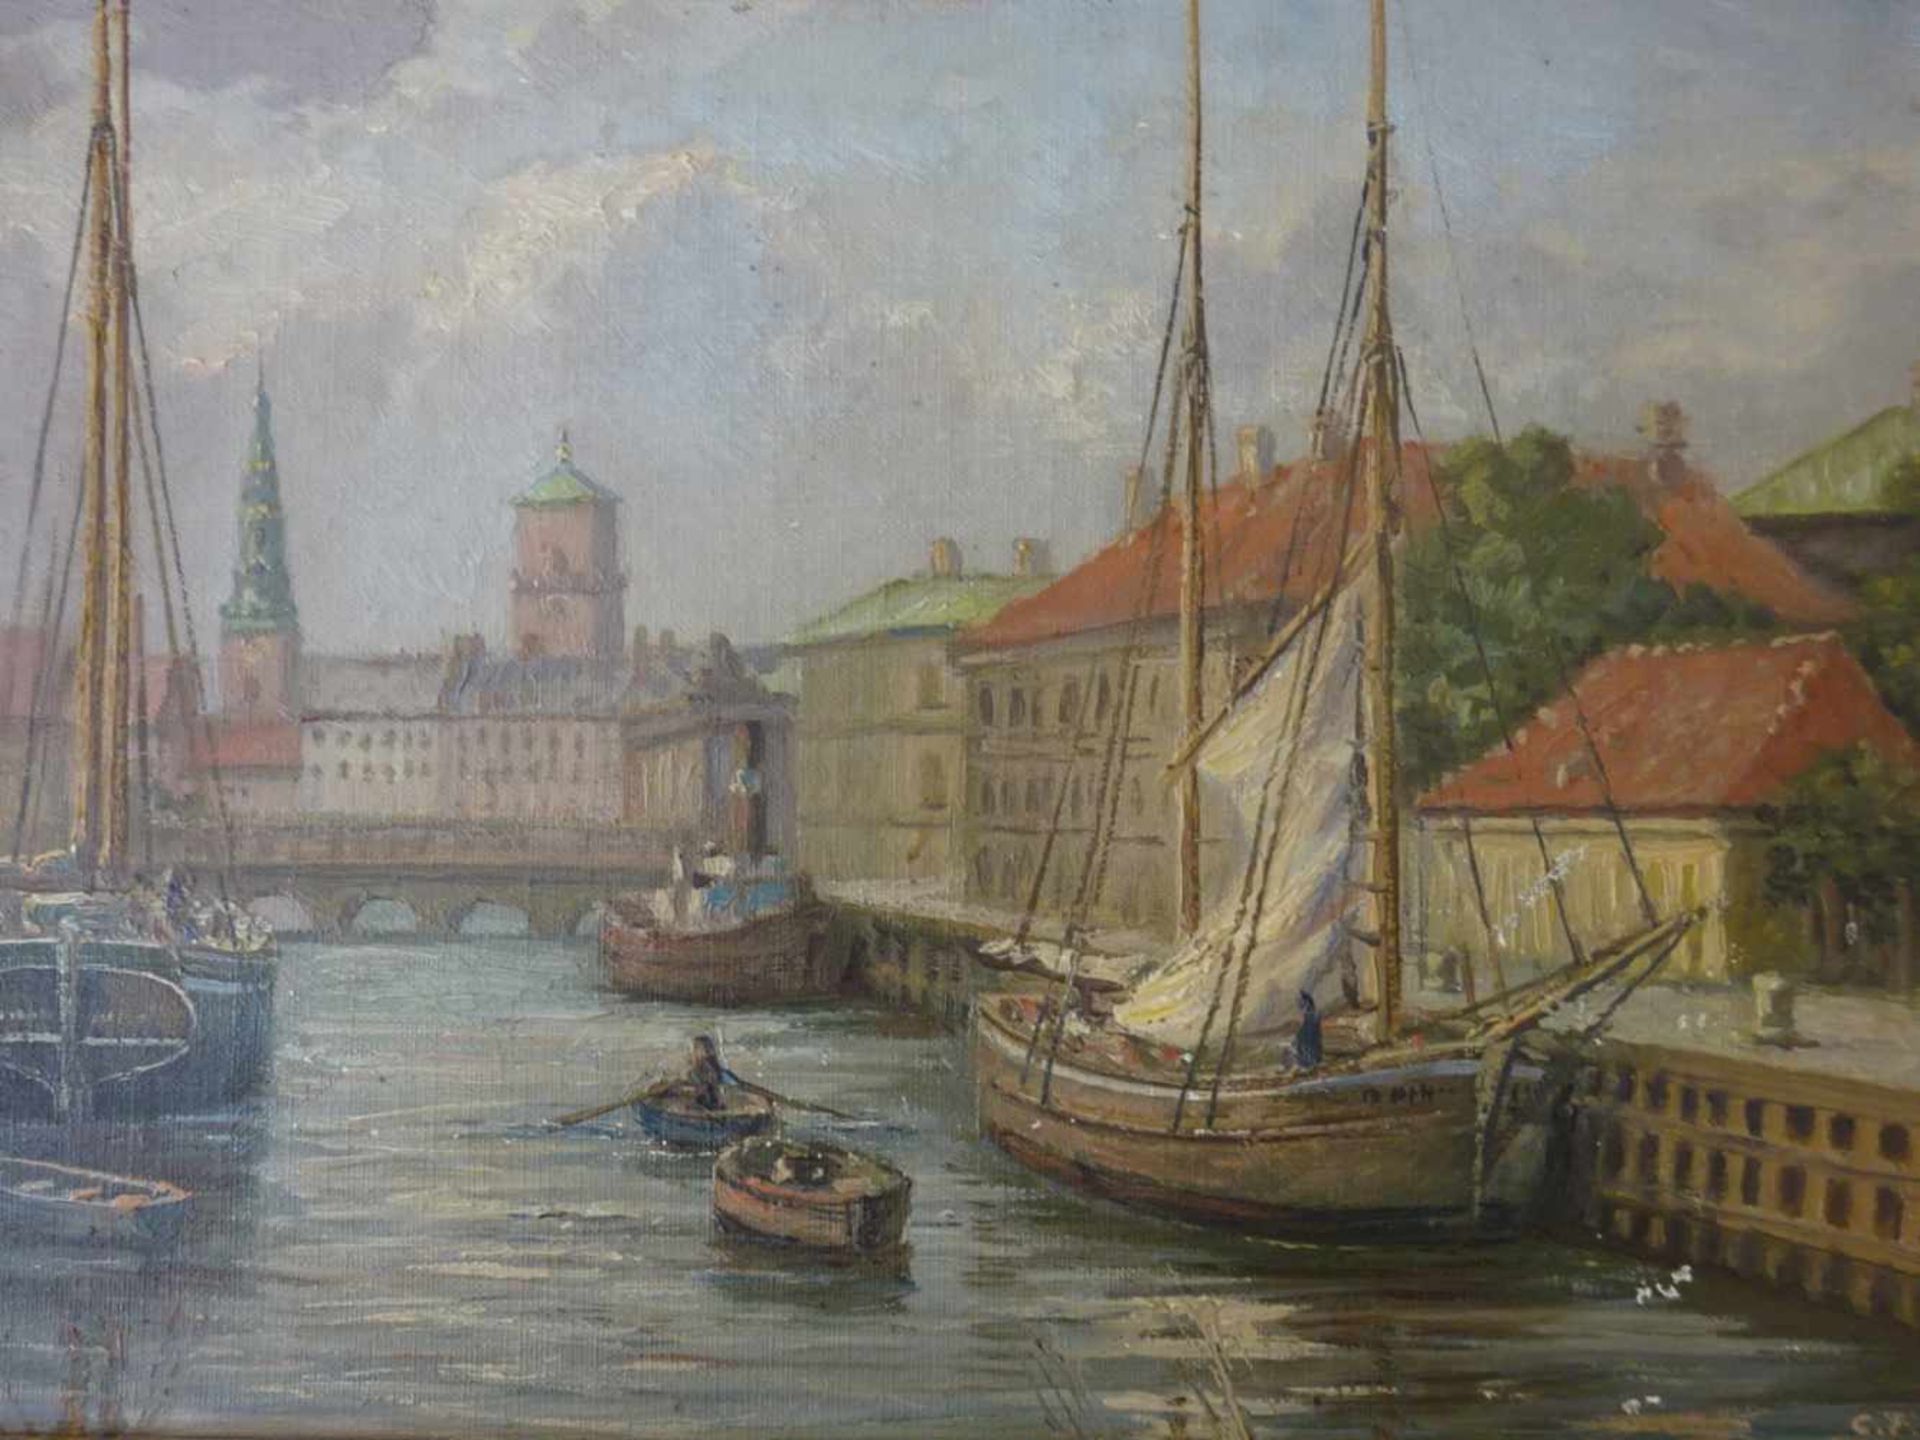 Dänische Kunst.- Ahl, C.F.(dänischer Künstler des 19. Jhdts., lebte in den Niederlanden). - Bild 2 aus 5